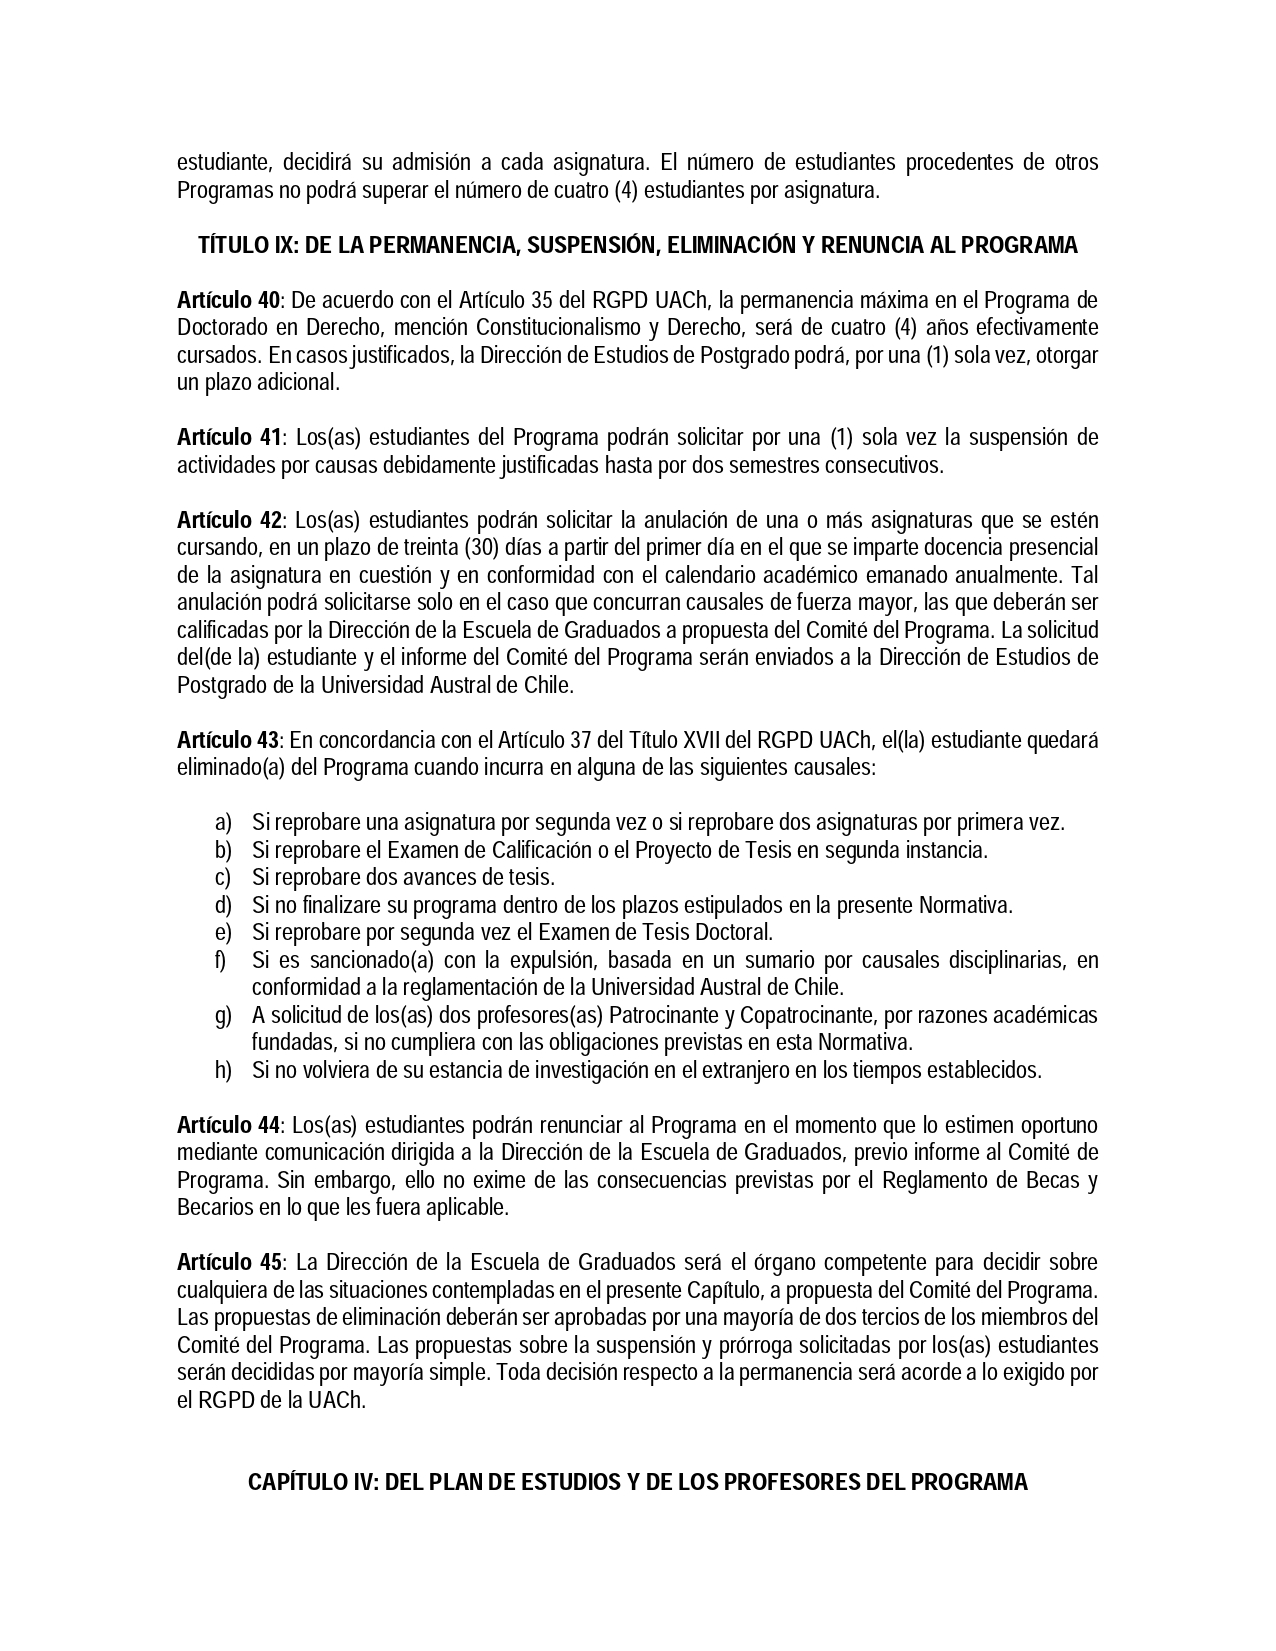 RESOL-FD-006-2021-Normativa-Interna-Doctorado-en-Derechopage-0009